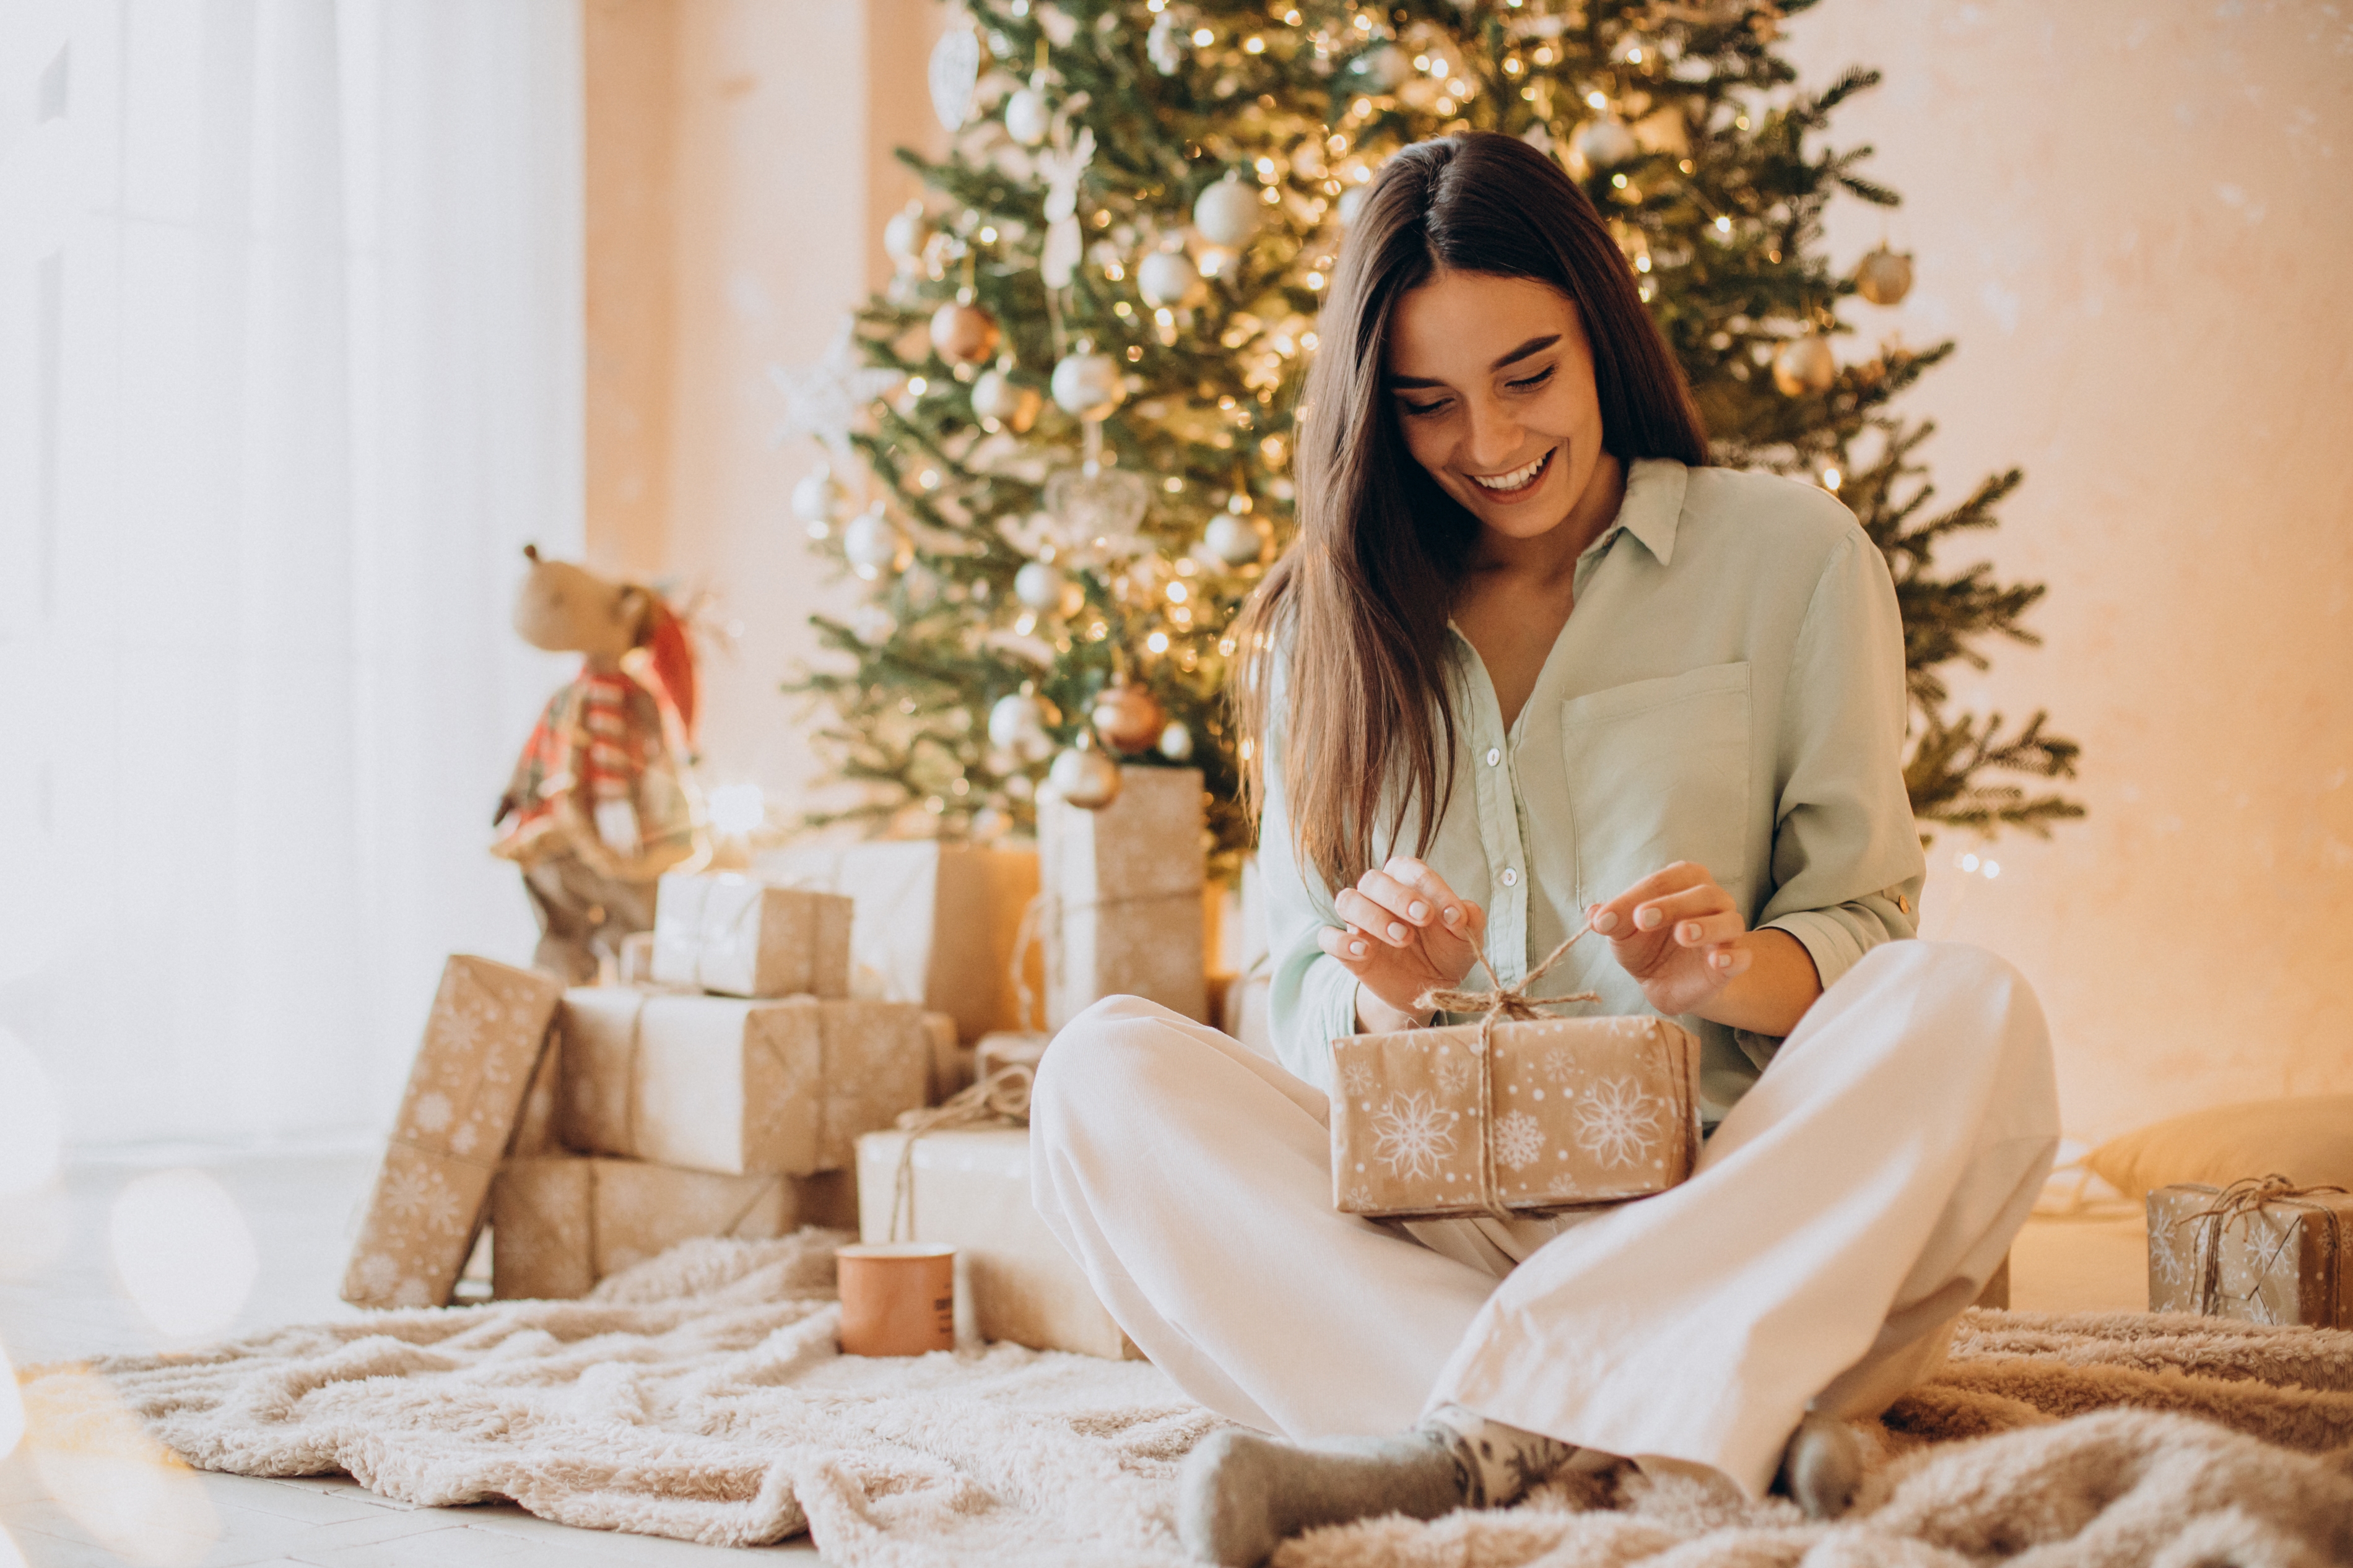 Eine Frau, die ein Geschenk öffnet | Quelle: Shutterstock